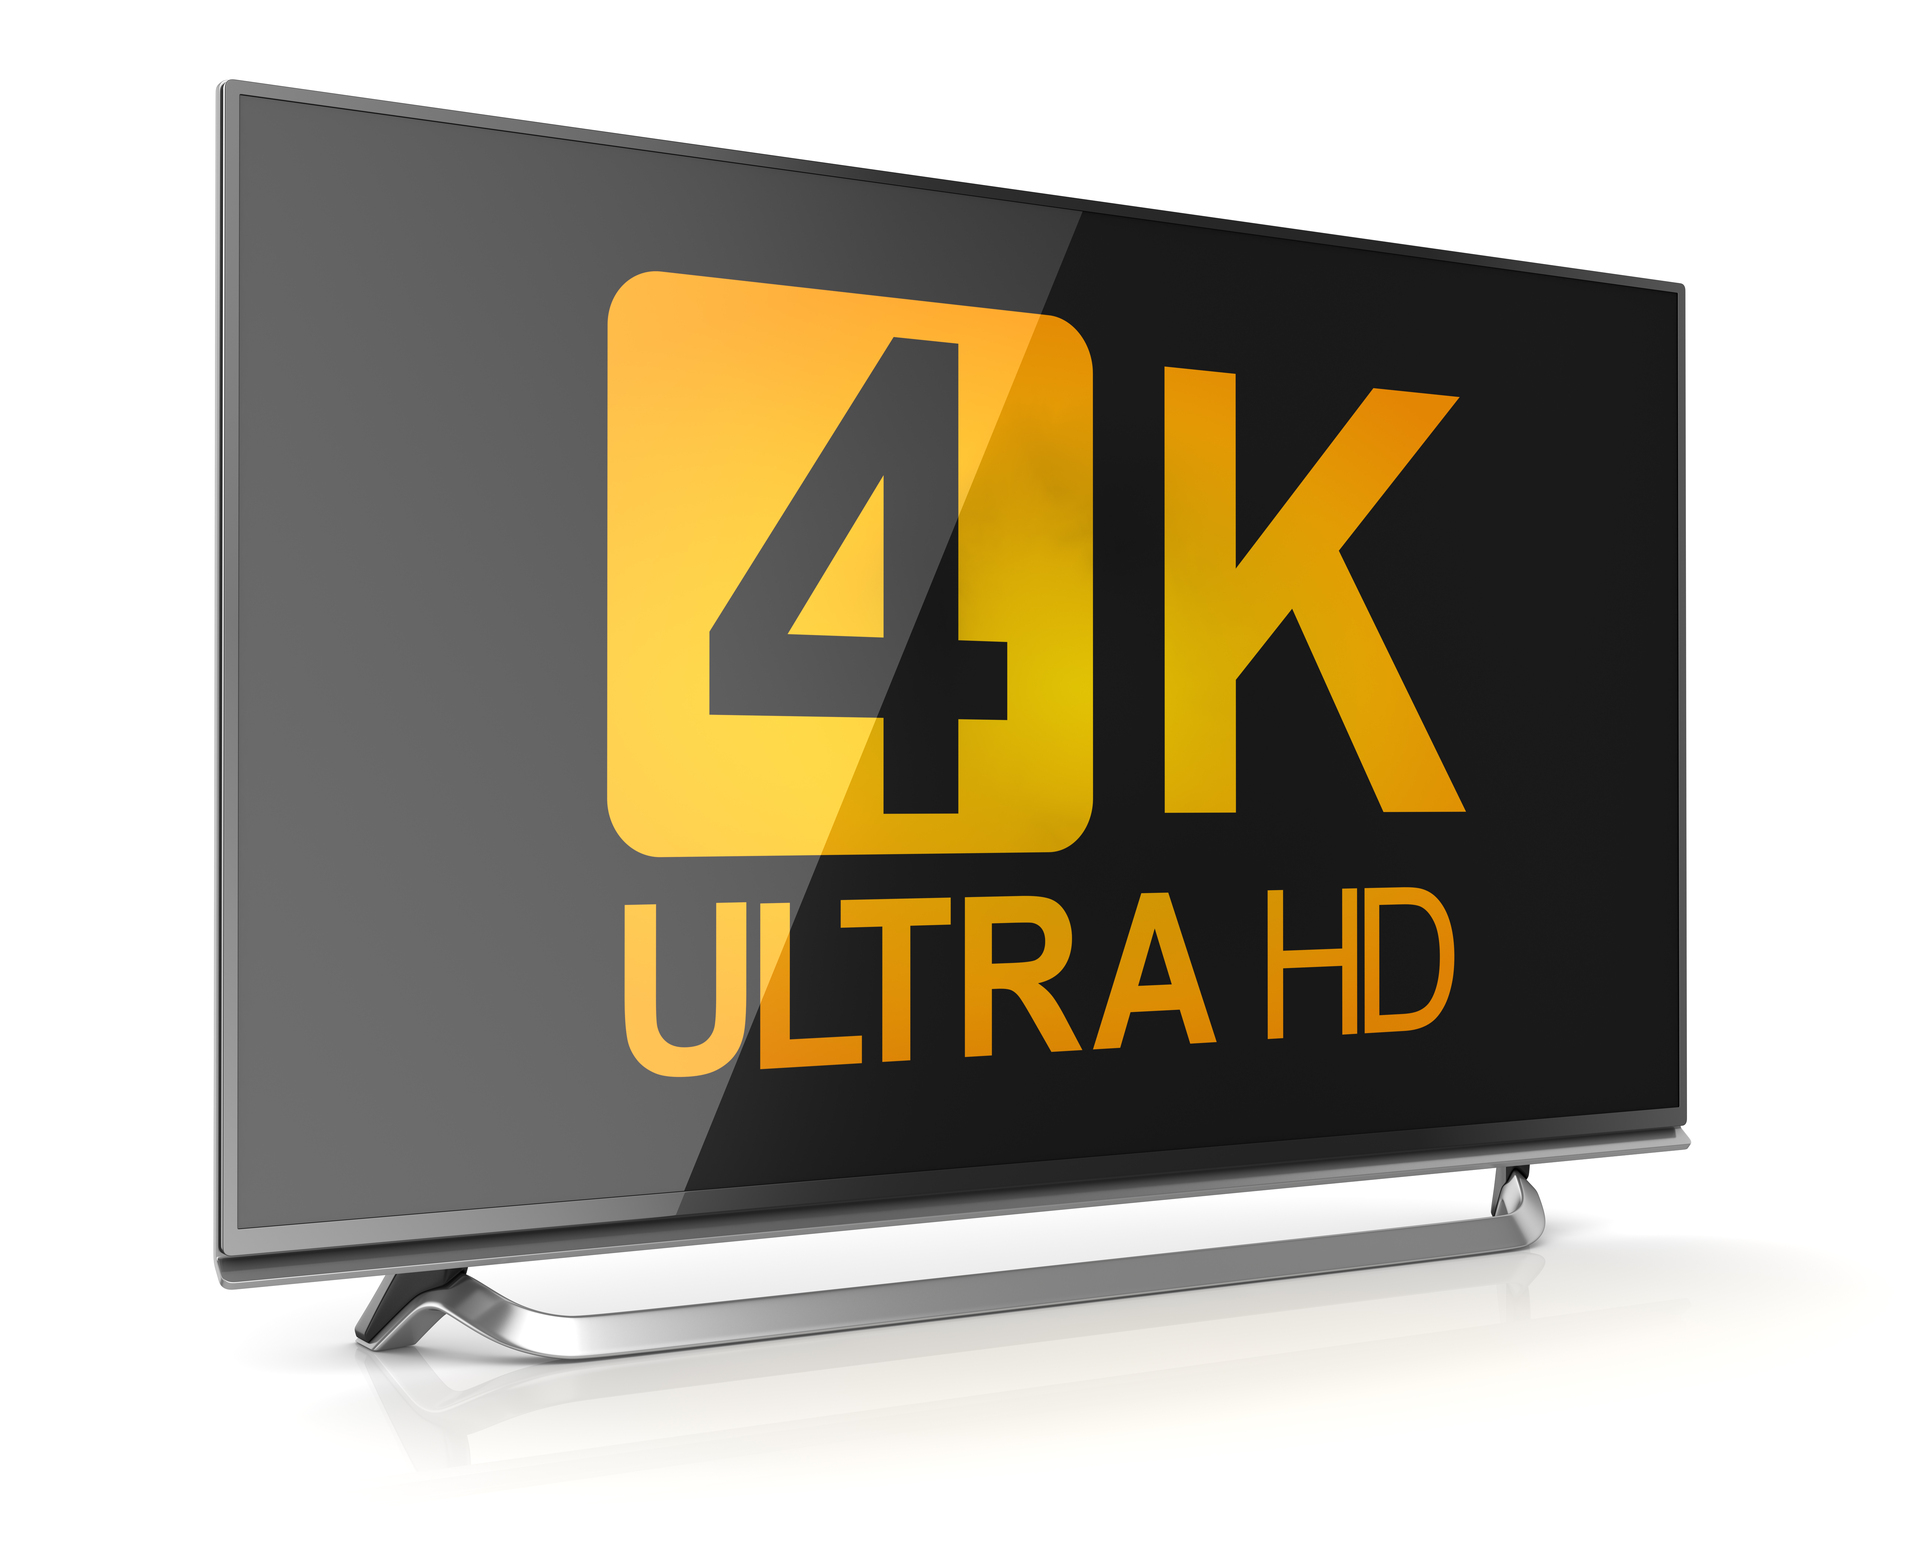 På bilden kan man se en TV-skärm som visar texten "4K ULTRA HD" i gula och orangea nyanser. Skärmen har en smal ram och står på ett silverfärgat ställ